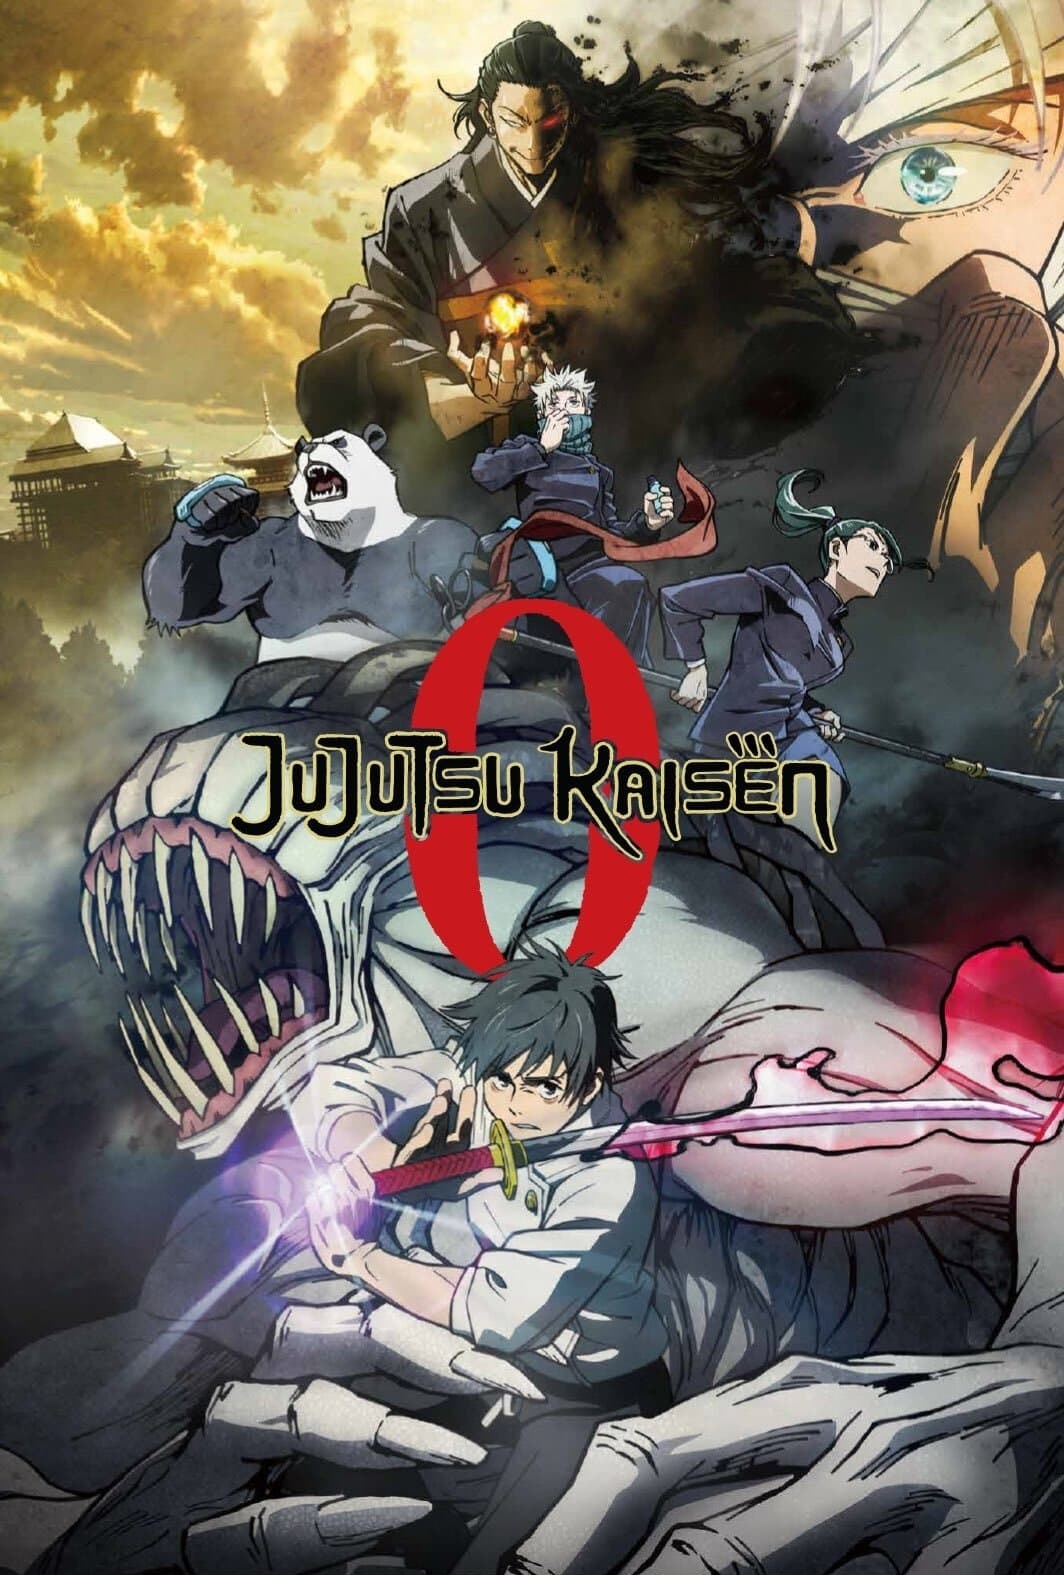 Jujutsu Kaisen 0 – The Movie [HD] (2022)